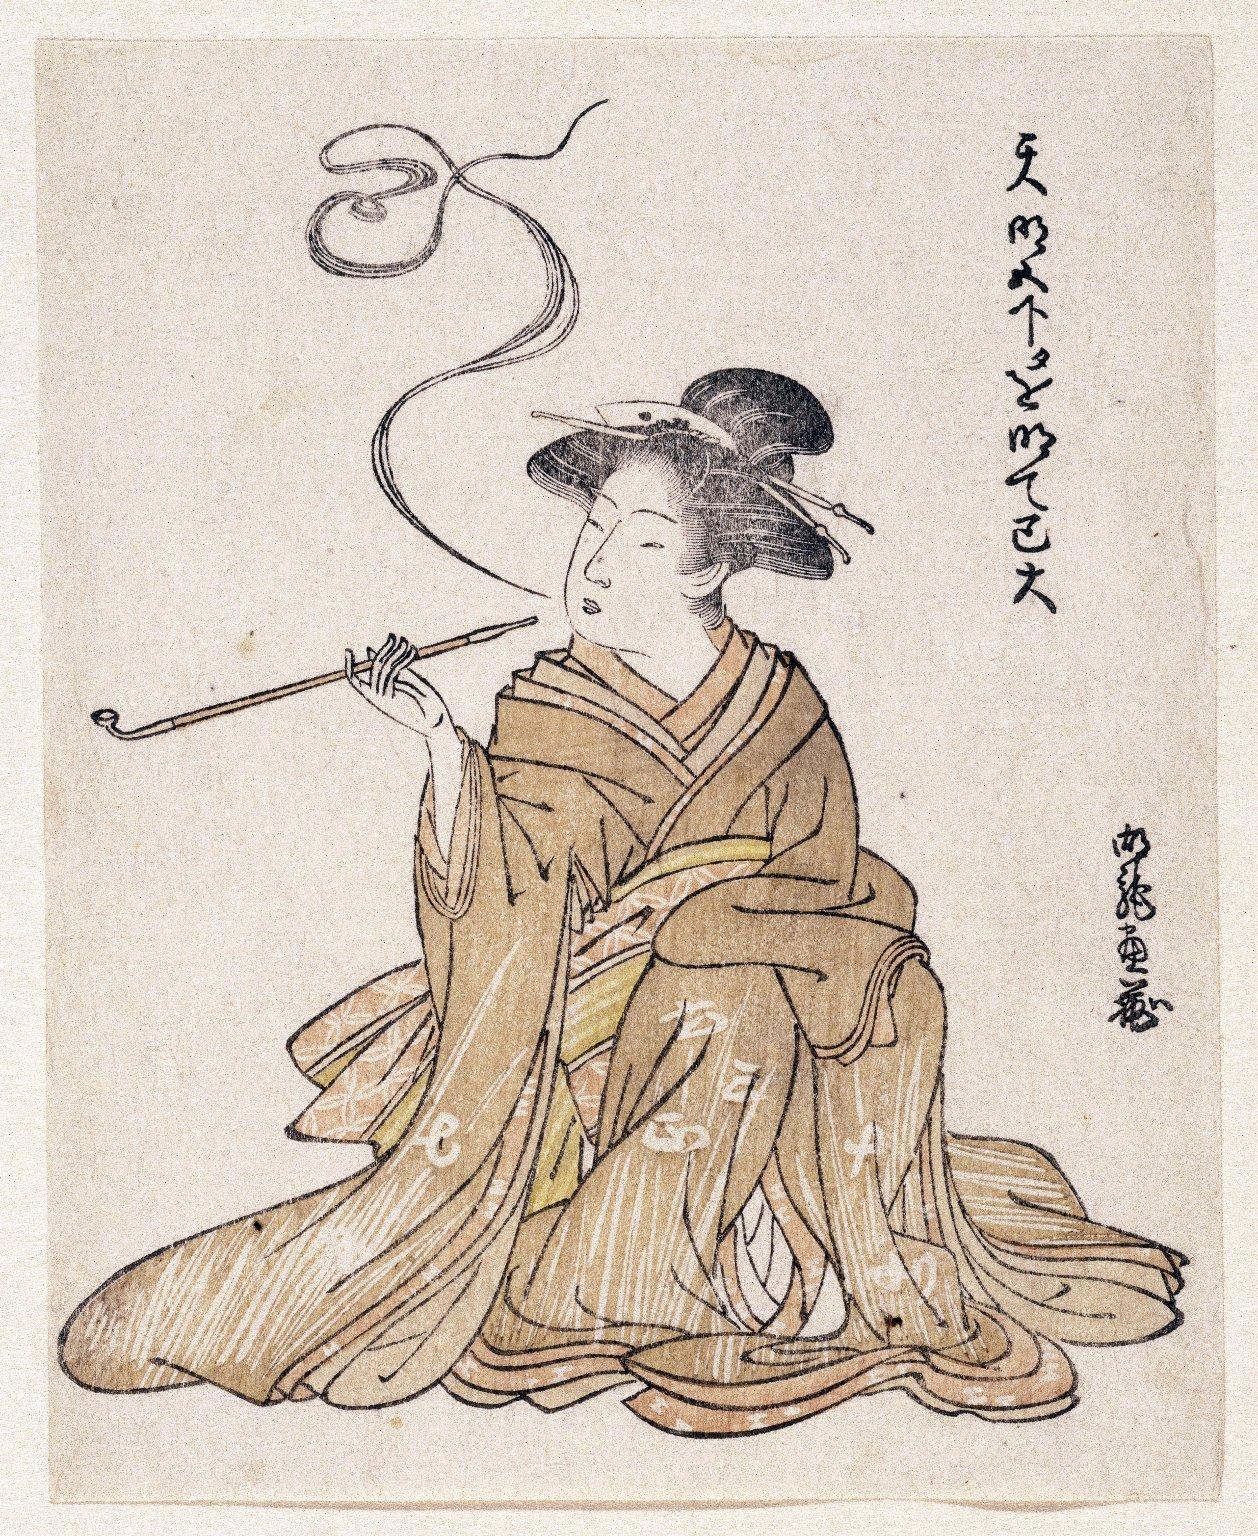 E-Goyomi (Курящая леди) Гравюра на дереве, предположительно принадлежащая Коринсаю , датируемая 1785–1790 годами. 